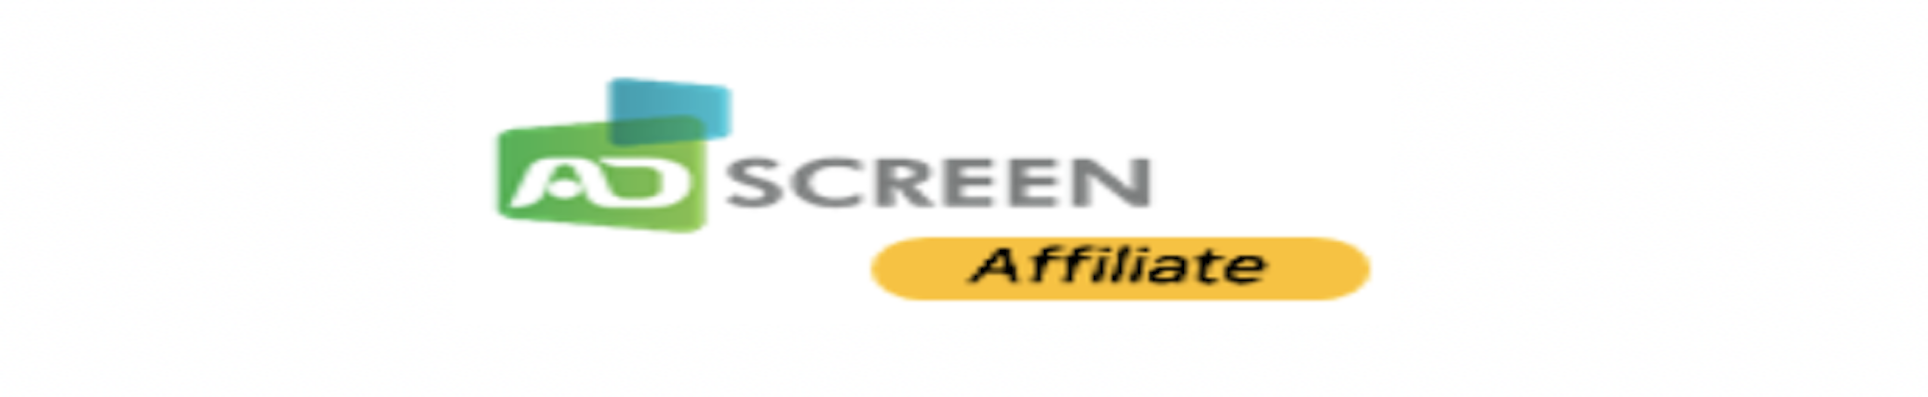 AdScreen Affiliate